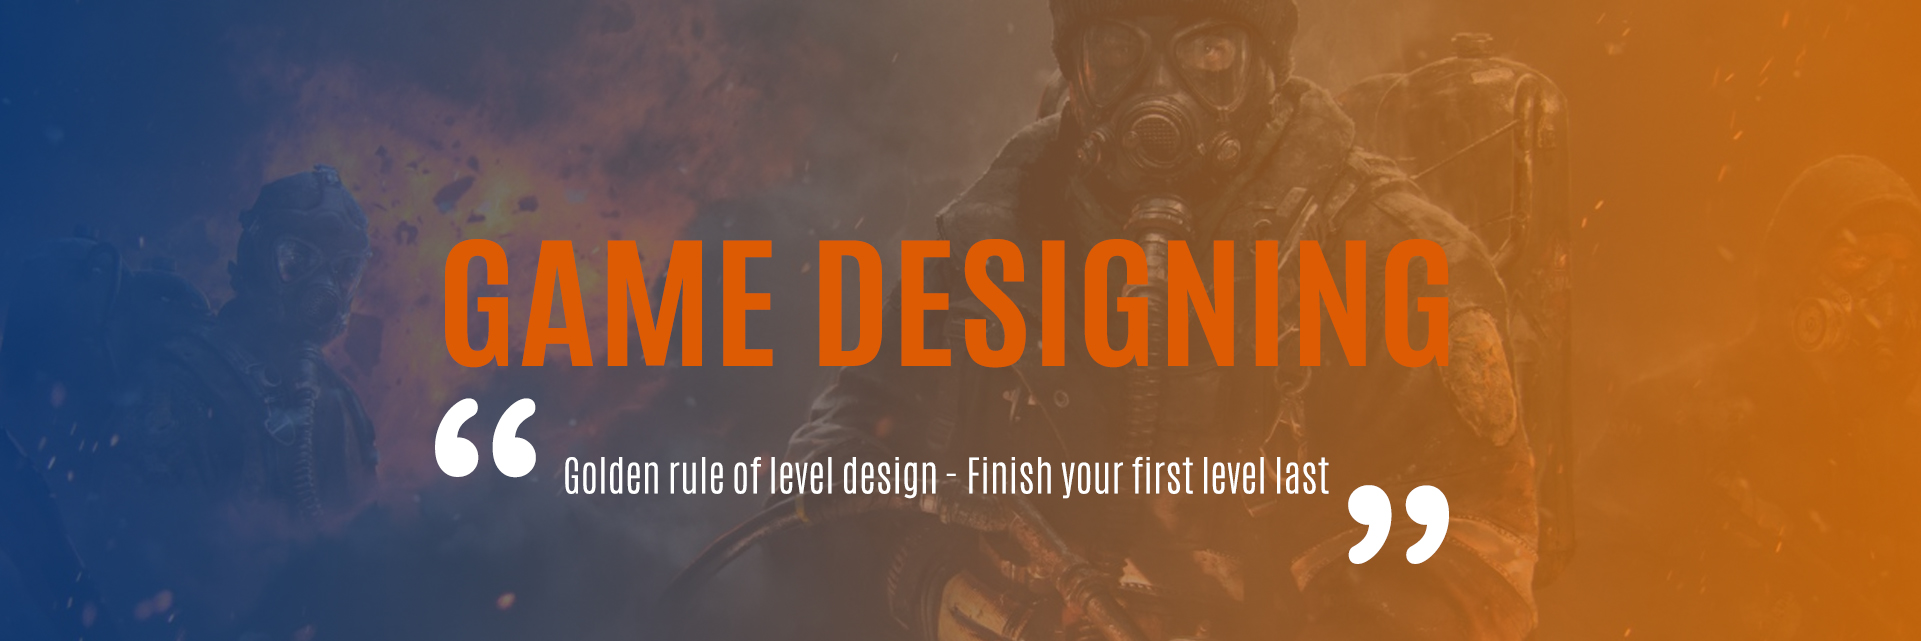 diploma_game_designing